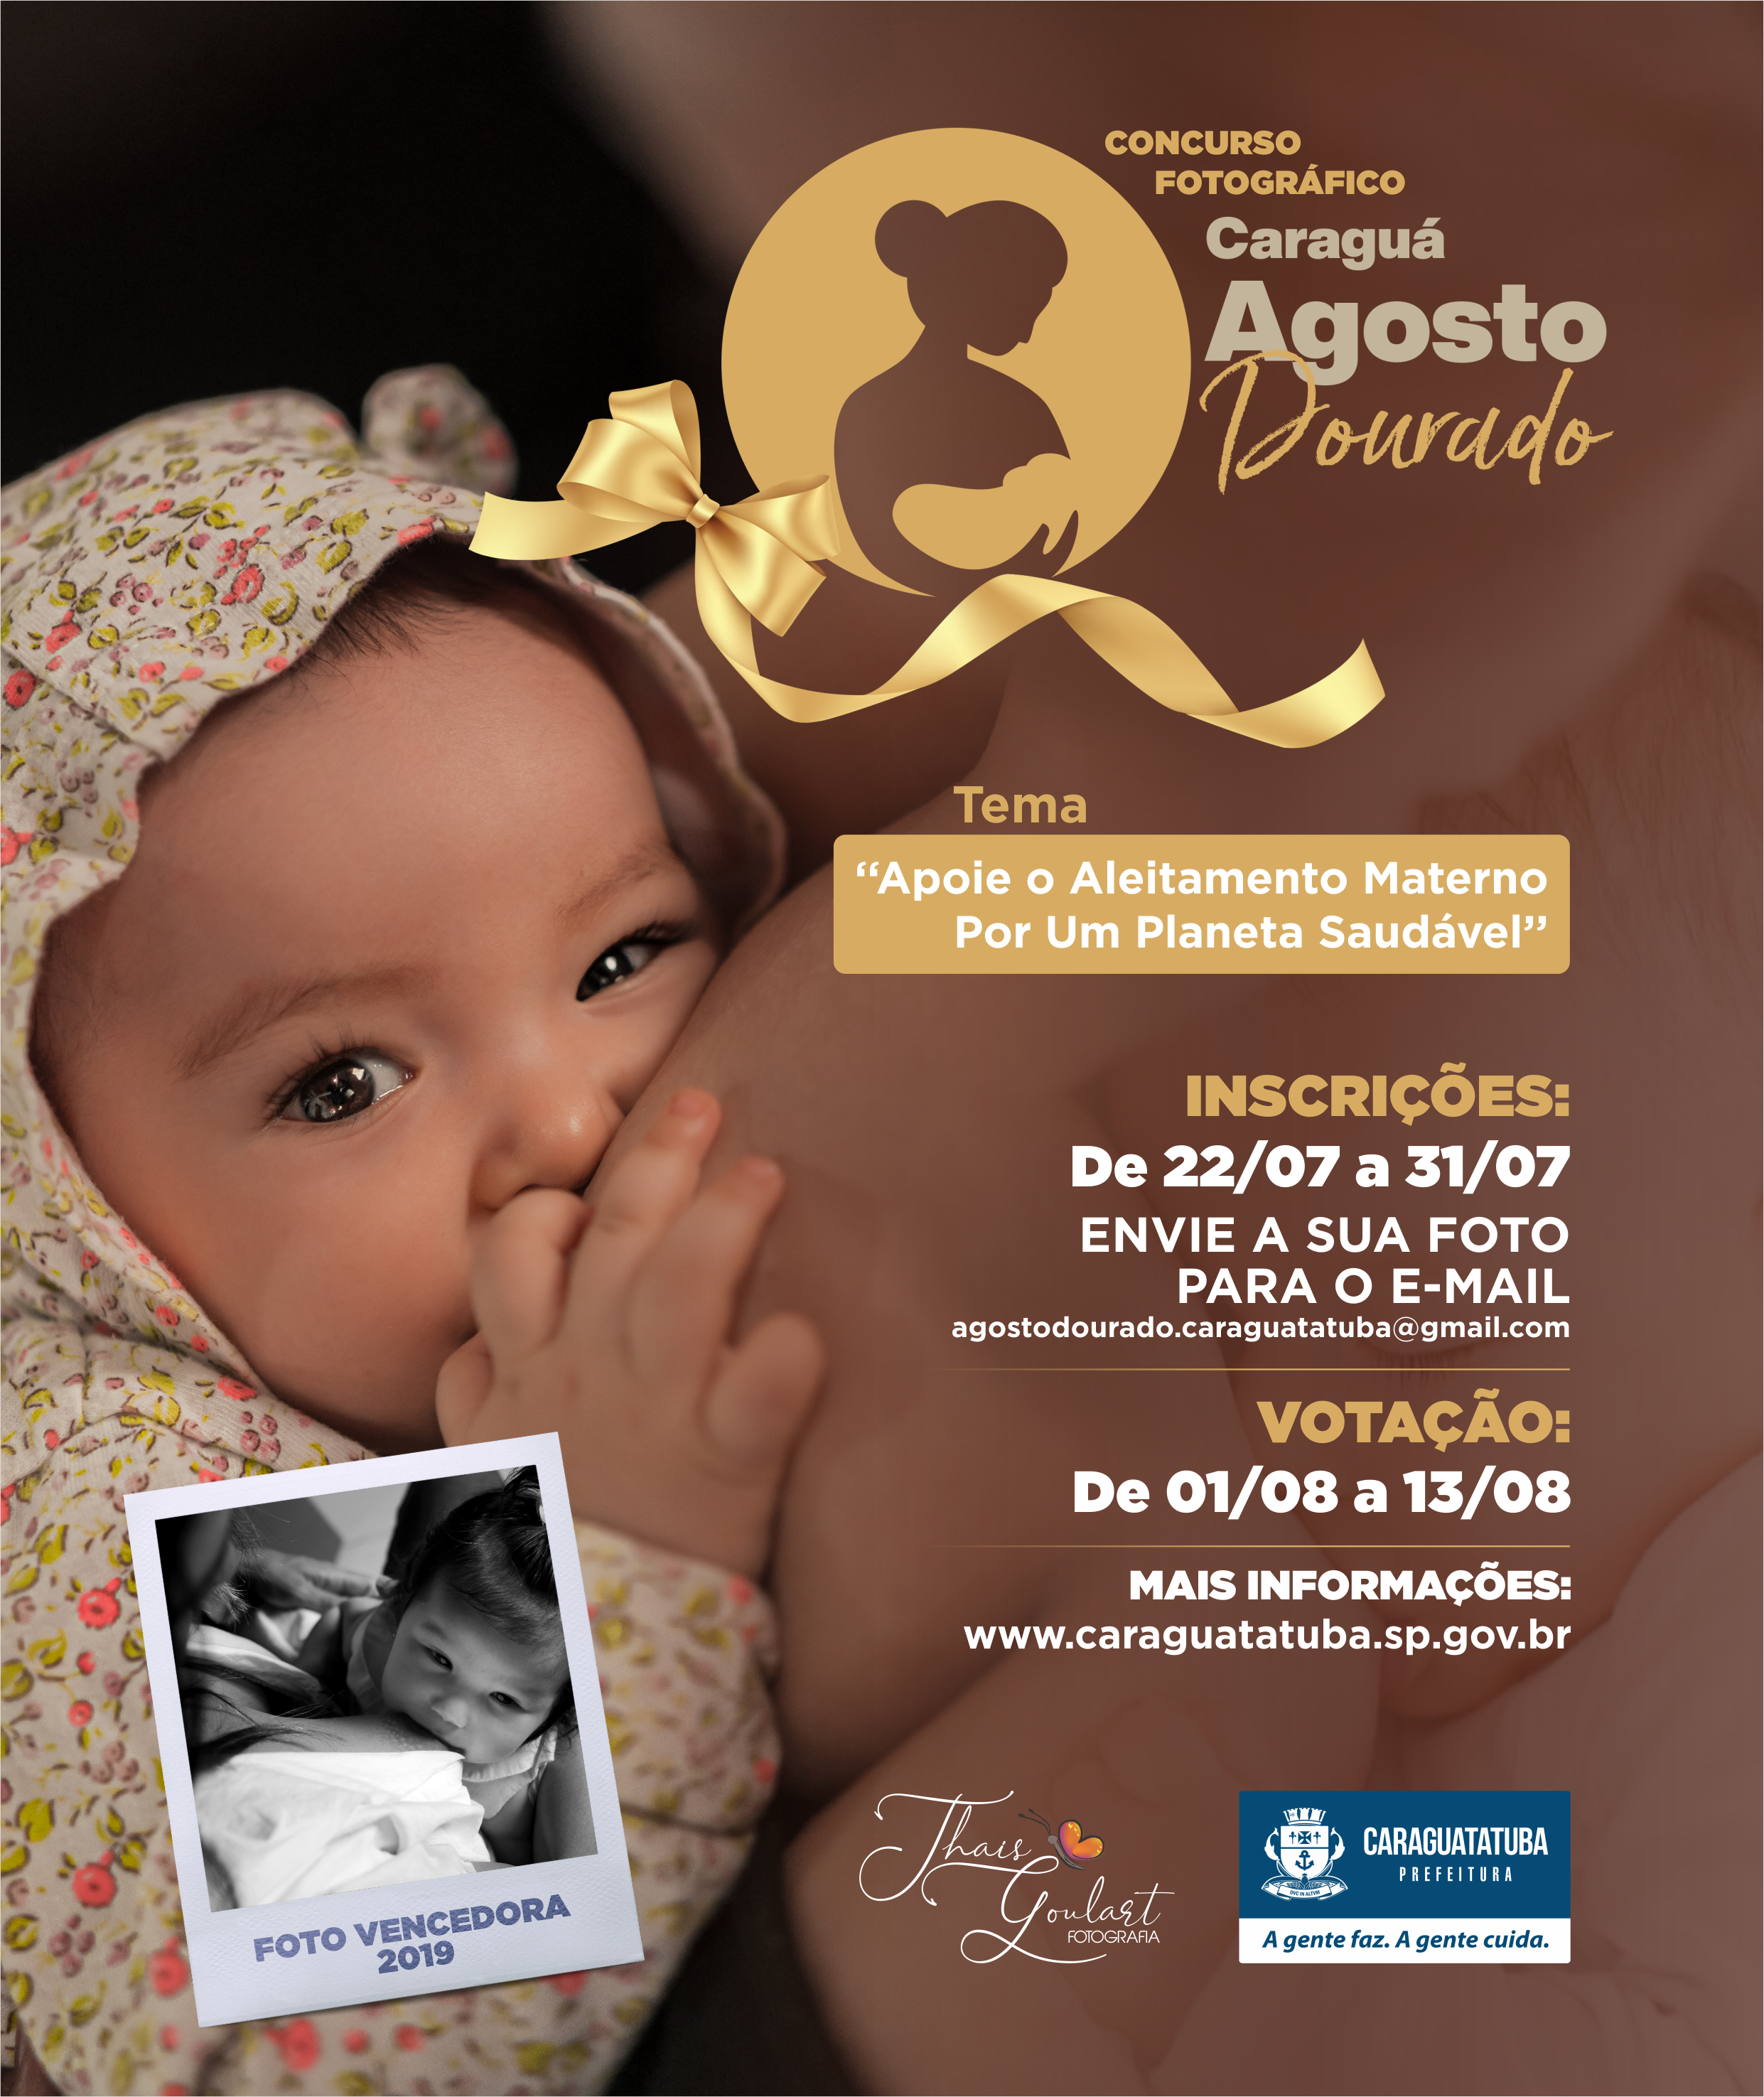 Ceami de Caraguatatuba lança concurso de fotografia para celebrar a Semana do Aleitamento Materno